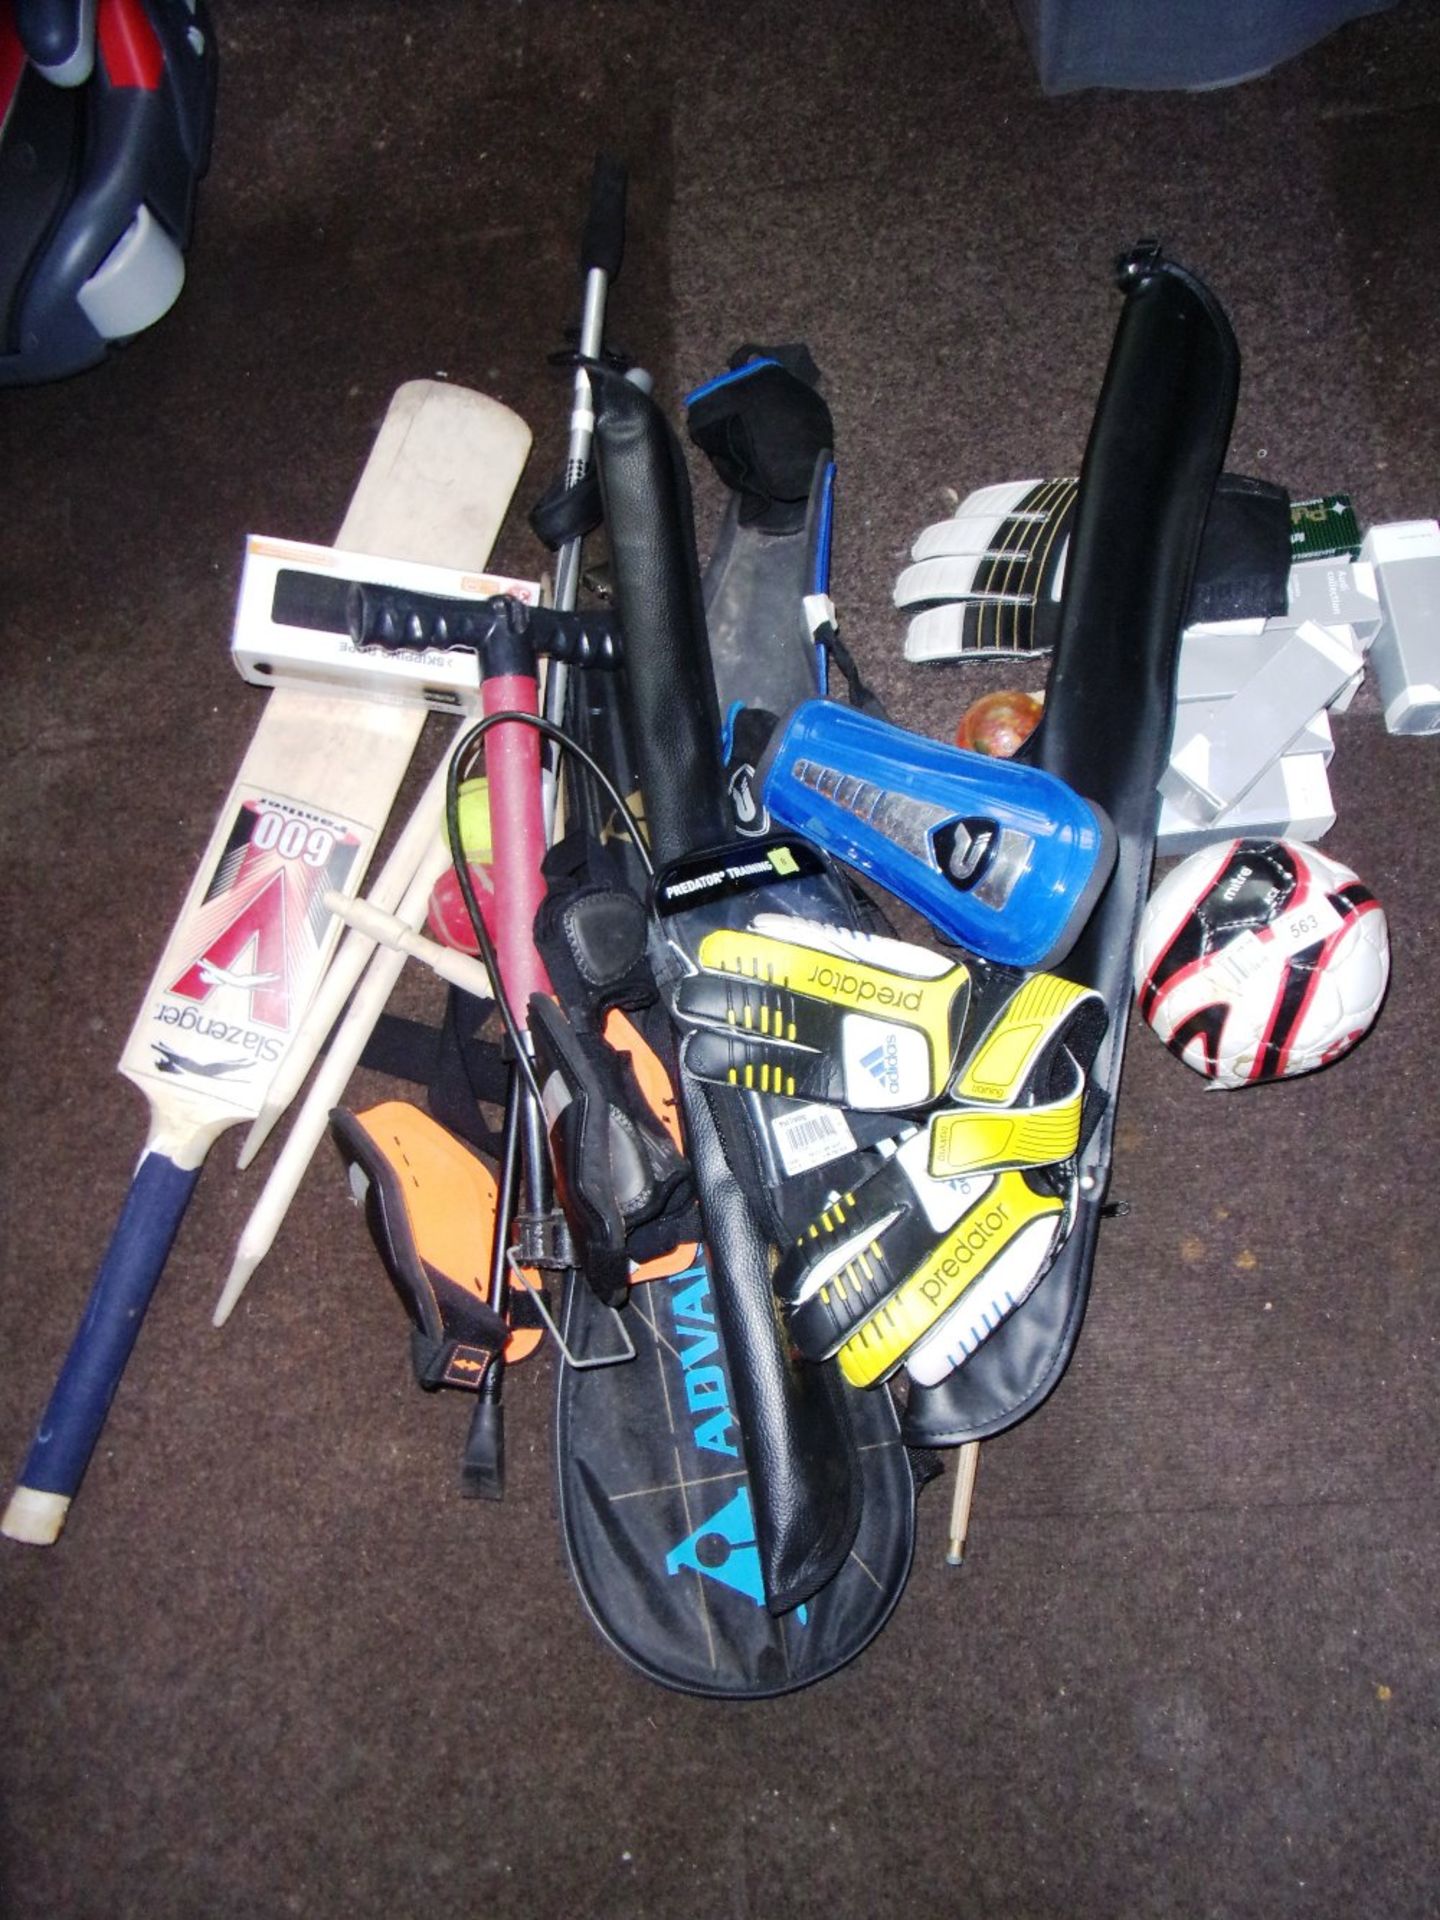 Quantity of assorted sports equipment - golf balls, cricket bat, etc.